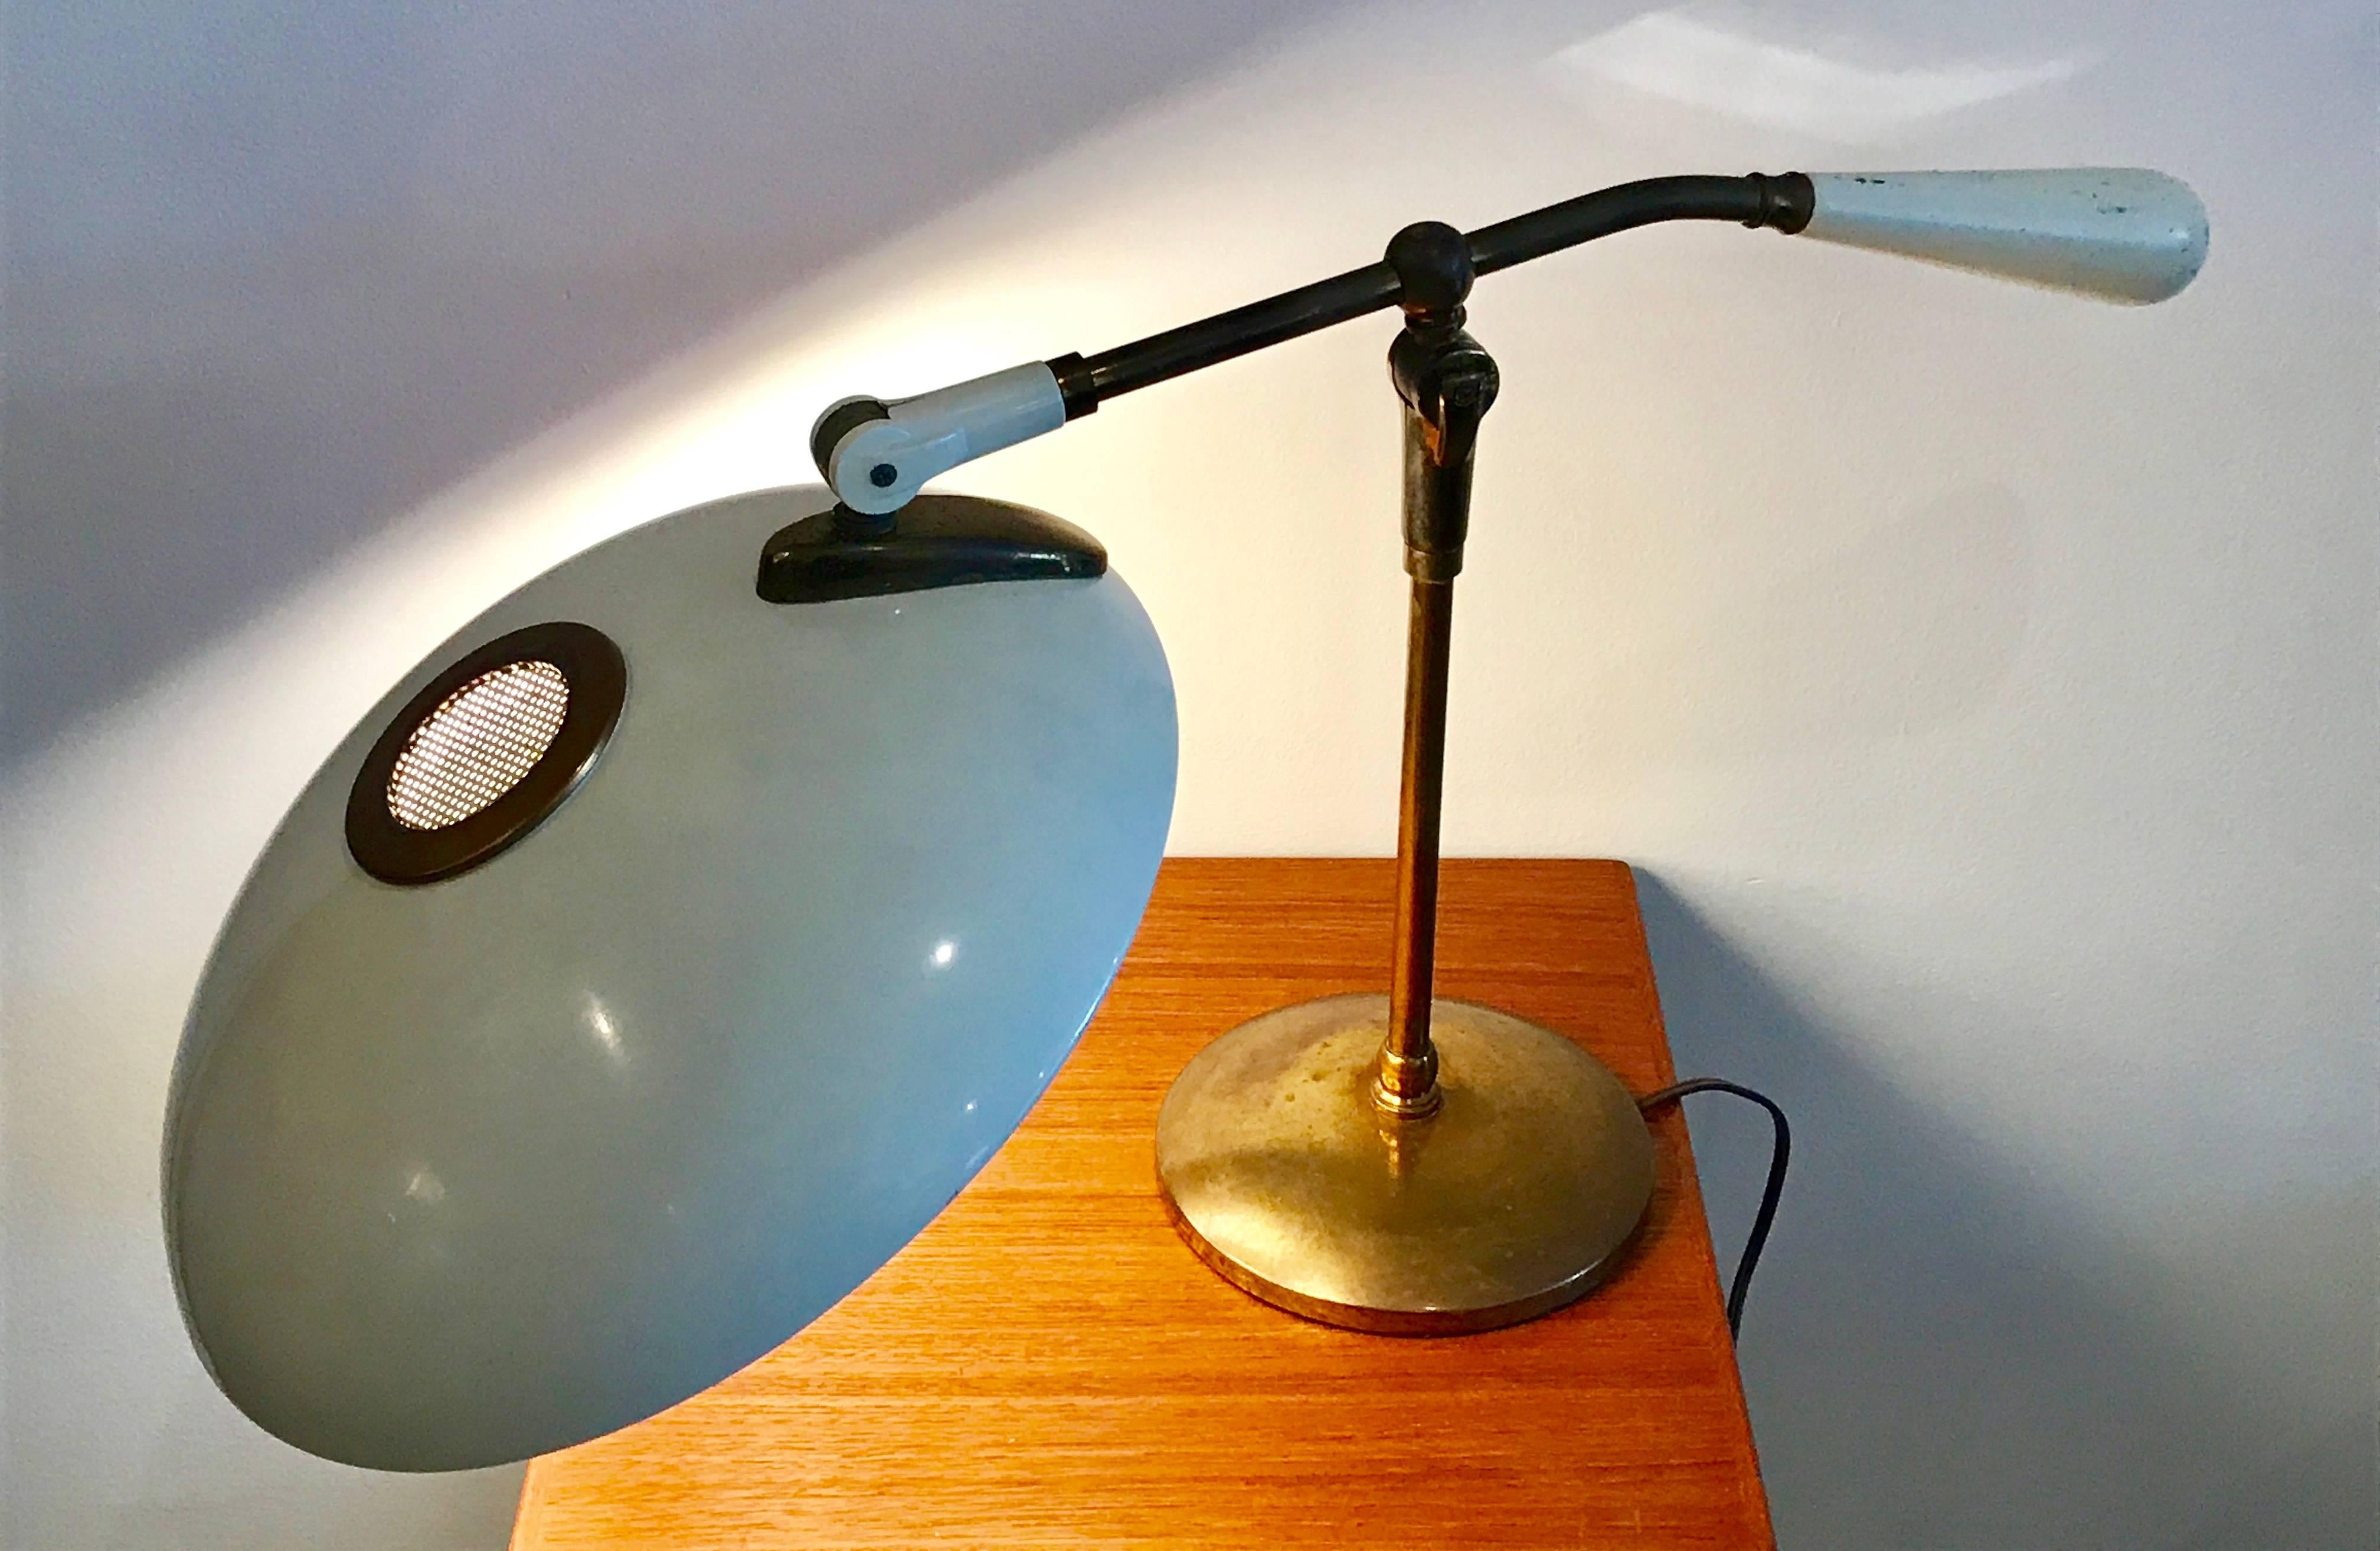 Ikonische Schreibtischlampe, entworfen von Gerald Thurston für Lightolier, alles original, keine fehlenden Teile oder Dellen, tolle Patina auf Messing, leichte Abplatzungen am gewichteten Griff, siehe Fotos. Funktioniert prima, aber professionelle